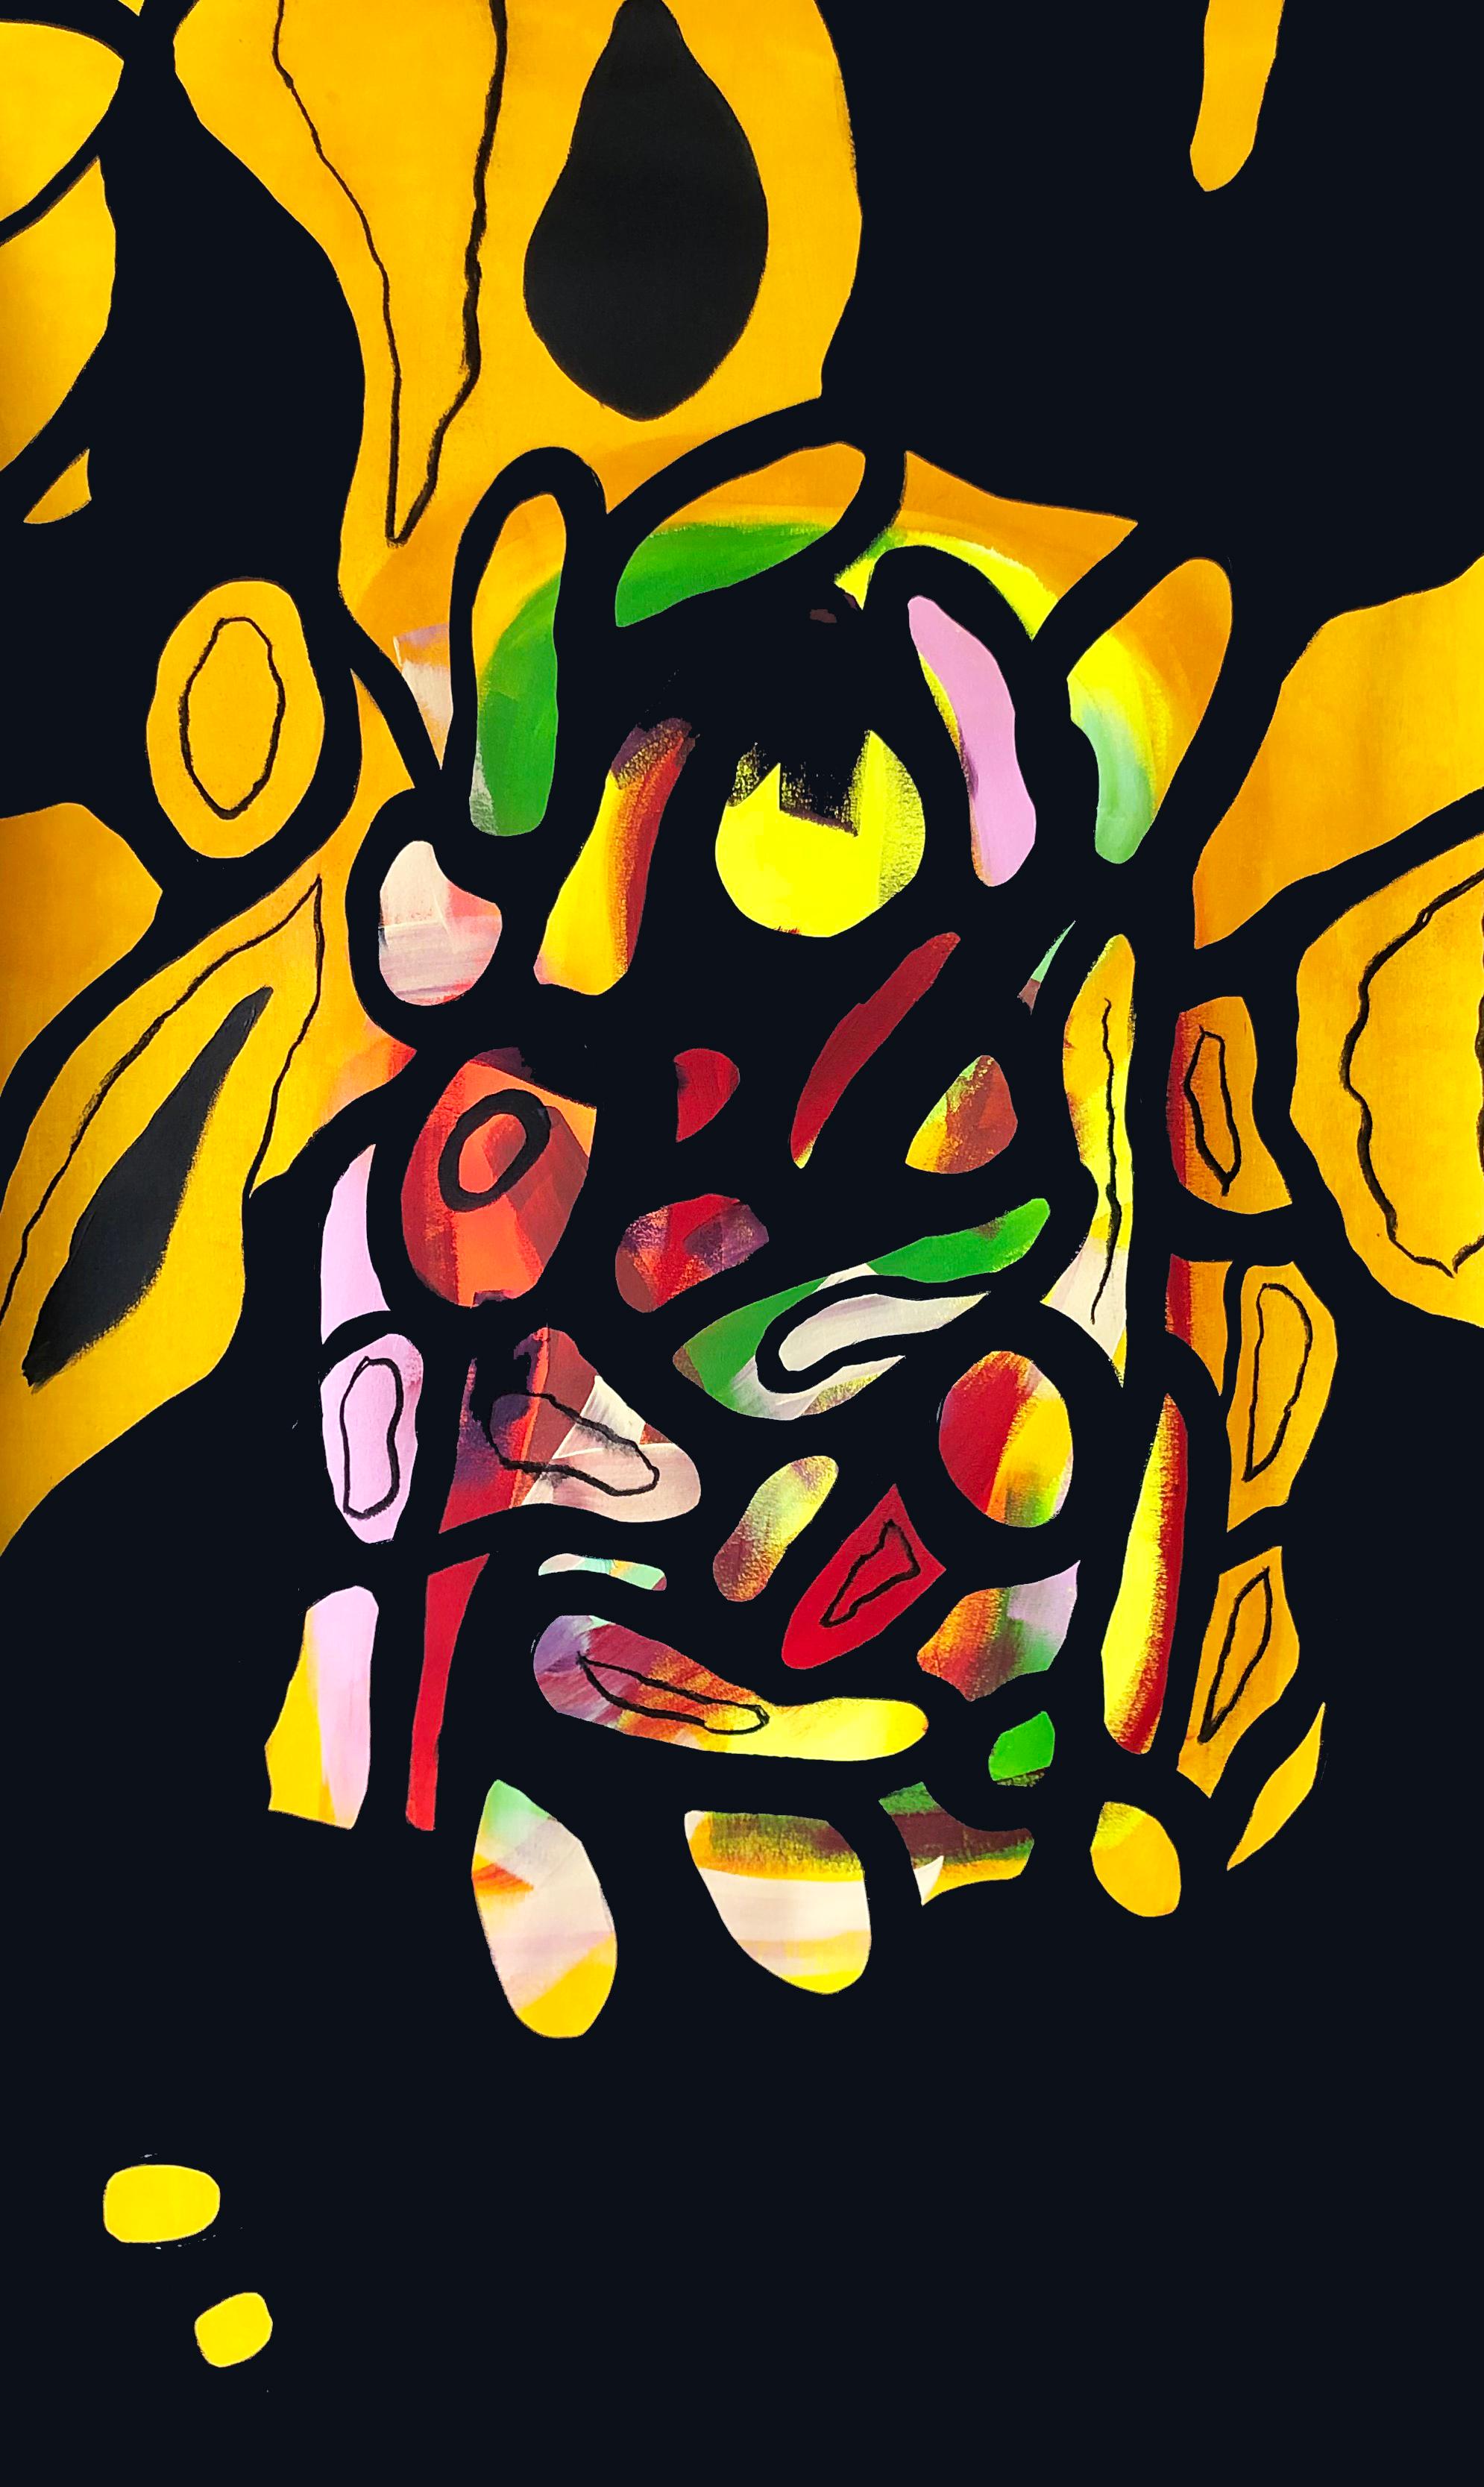 SILENCIO #1 und #2 Diptychon, 2023 von Alec Franco
Gesamtgröße: 118 cm H x 136 cm B
Einzelgröße: 118 cm H x 68 cm B
SILENCIO #1 (Acryl und Holzkohle, auf Leinwand)
SILENCIO #2 (Acryl und Pastell Öl, auf Leinwand)

Ungerahmt
Unterzeichnet von der 